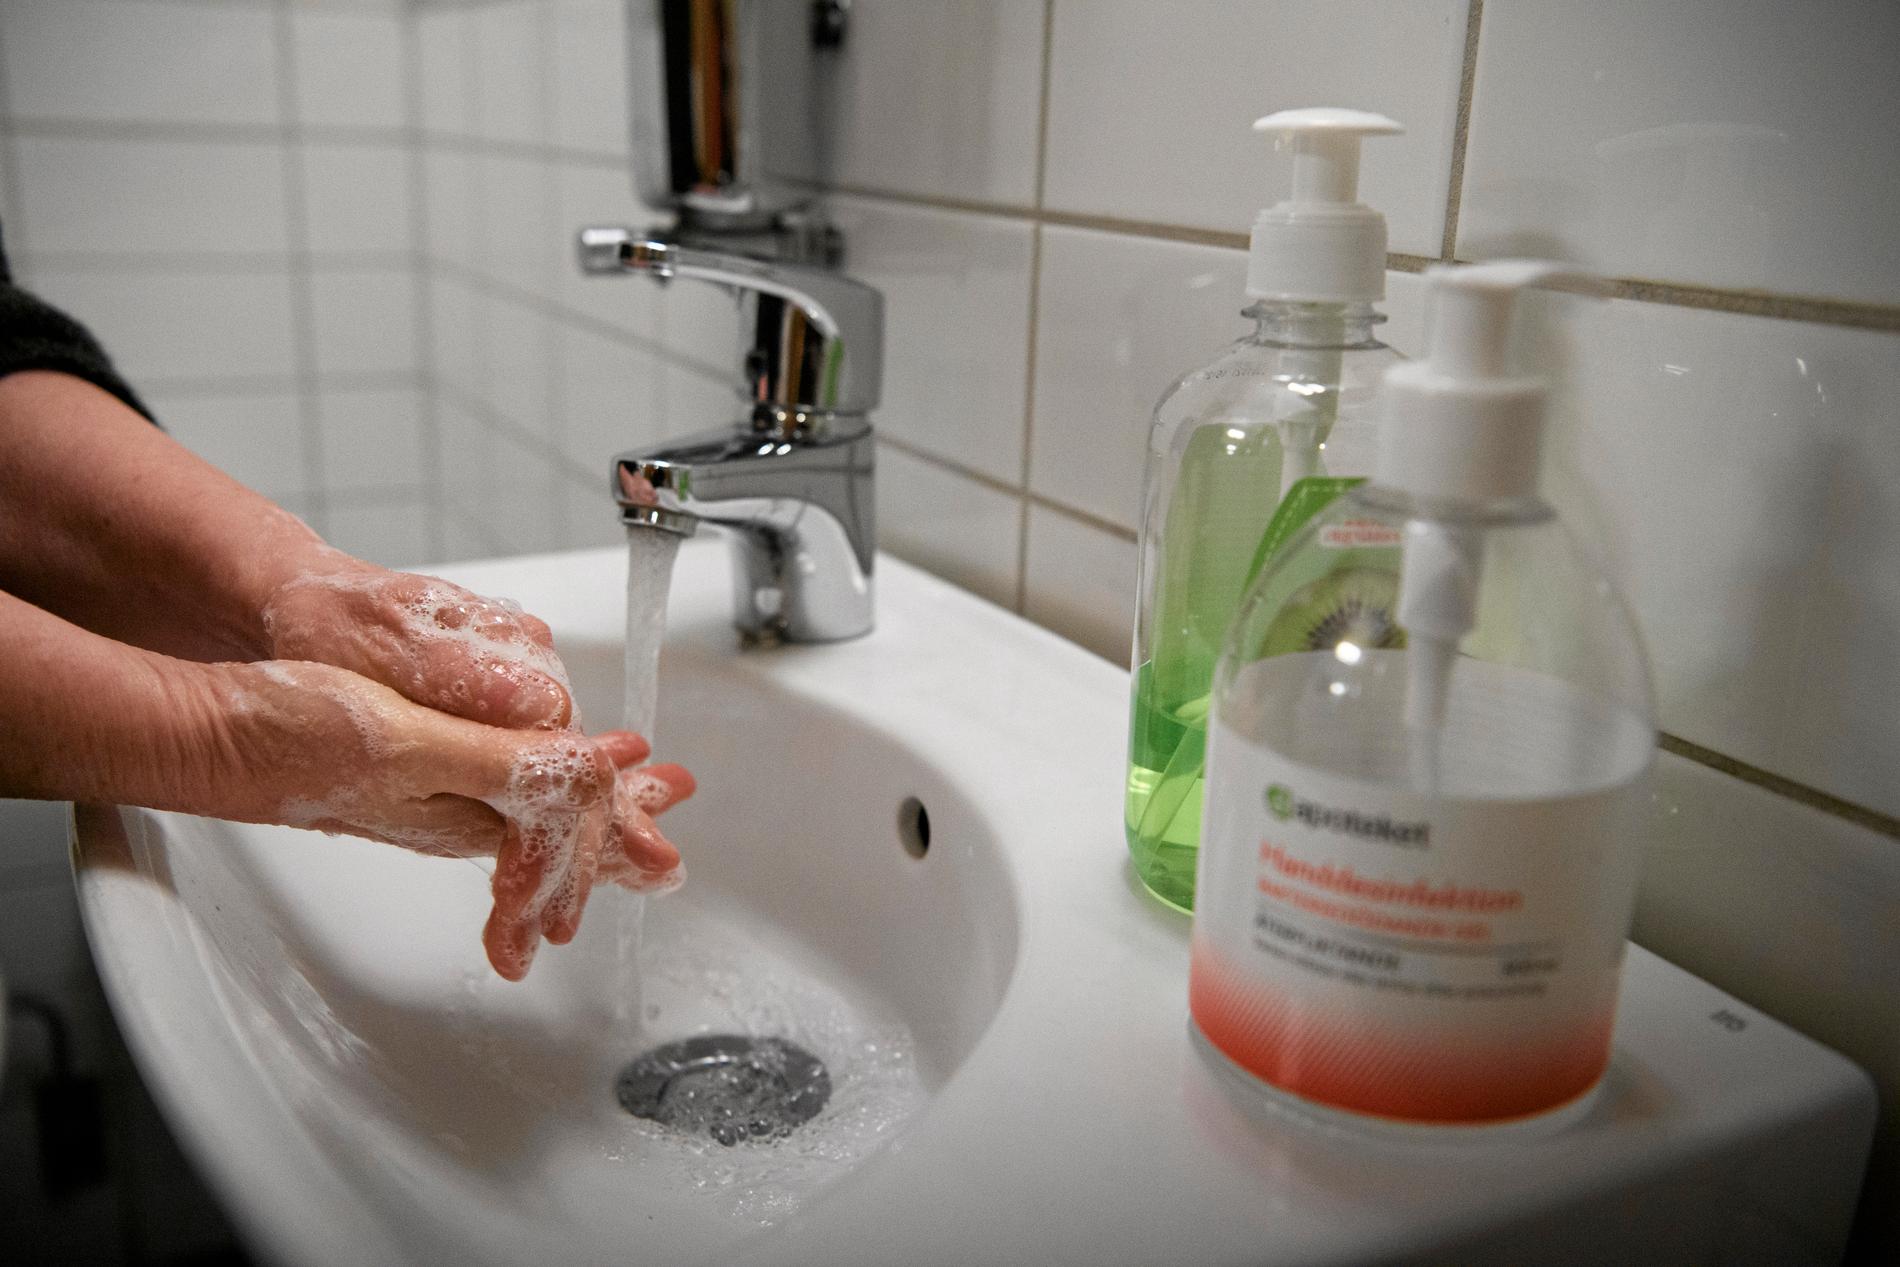 Tvätta händerna noga med tvål och vatten, har det hetat. Hur är det egentligen, undrar Johanna Frändén.